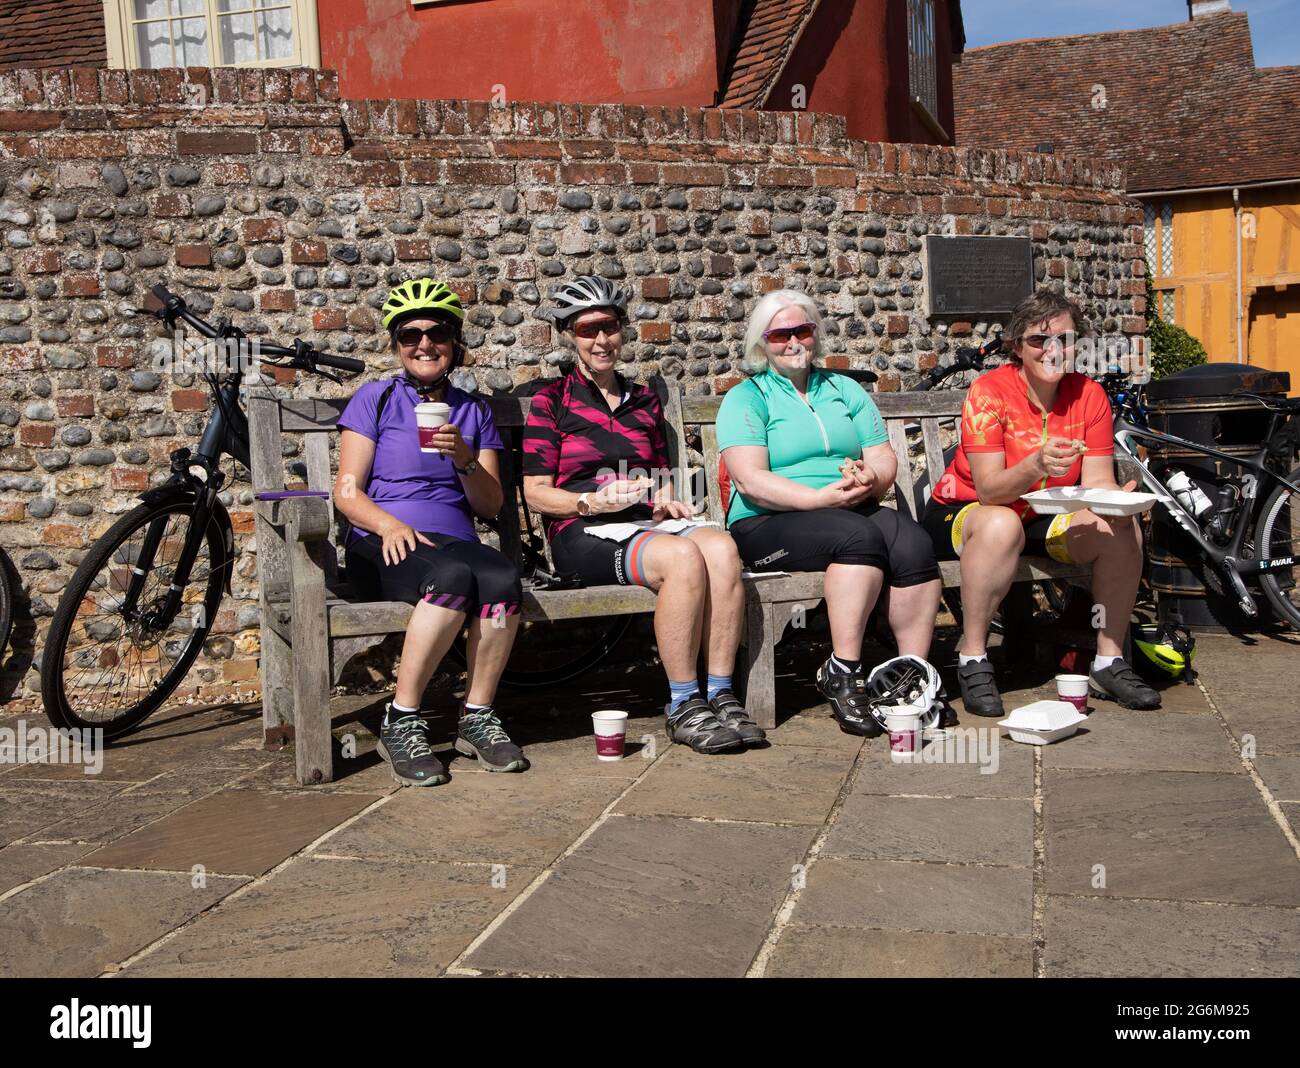 Quatre joyeuses femmes cyclistes mangeant et se reposant sur le banc Lavenham Suffolk Angleterre Banque D'Images